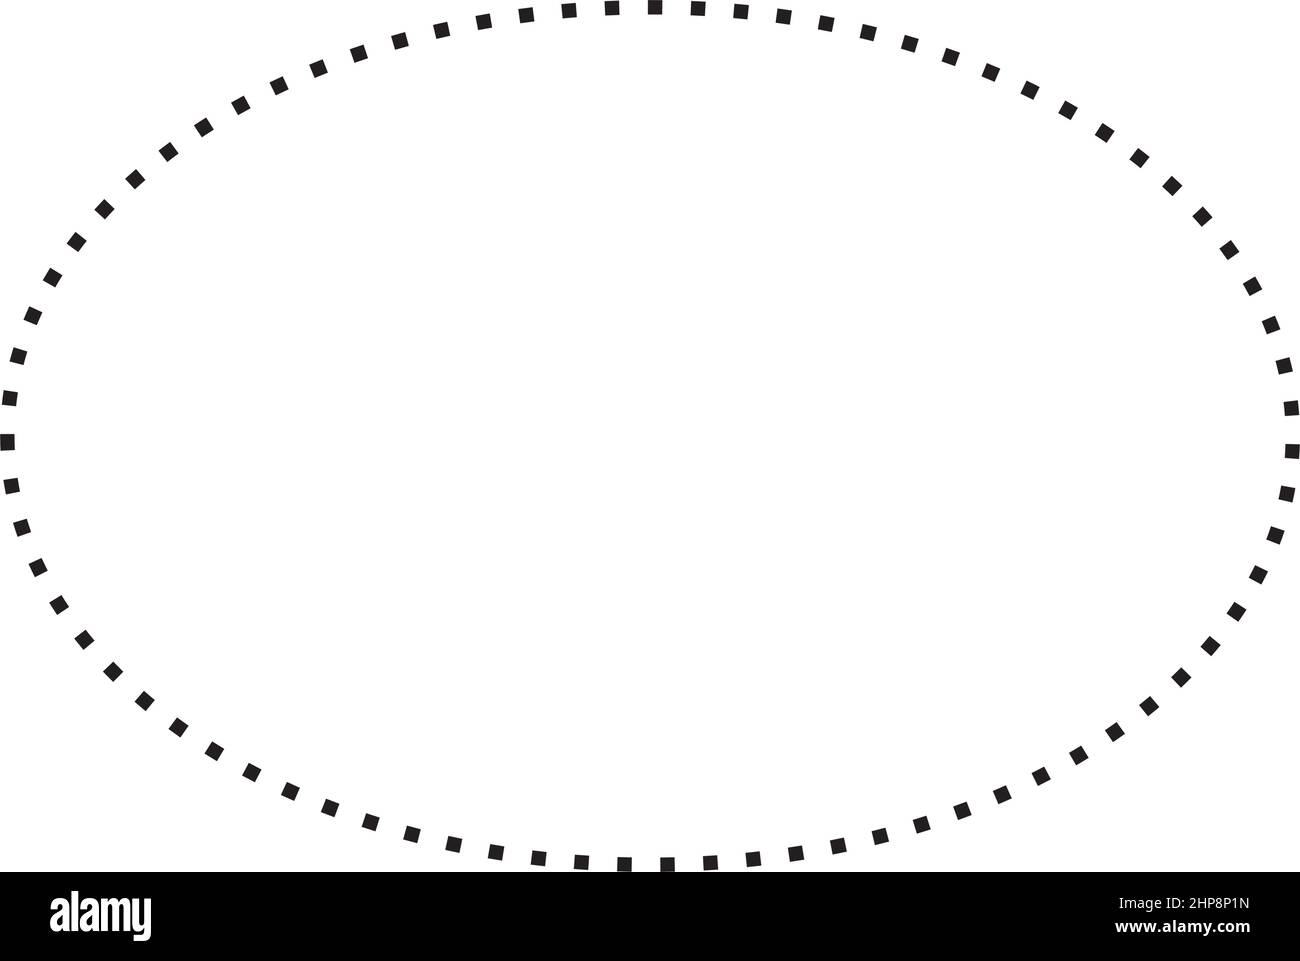 Ellipse Form gestrichelte Symbol Vektor-Symbol für kreative Grafik-Design-ui-Element in einer Piktogramm-Illustration Stock Vektor